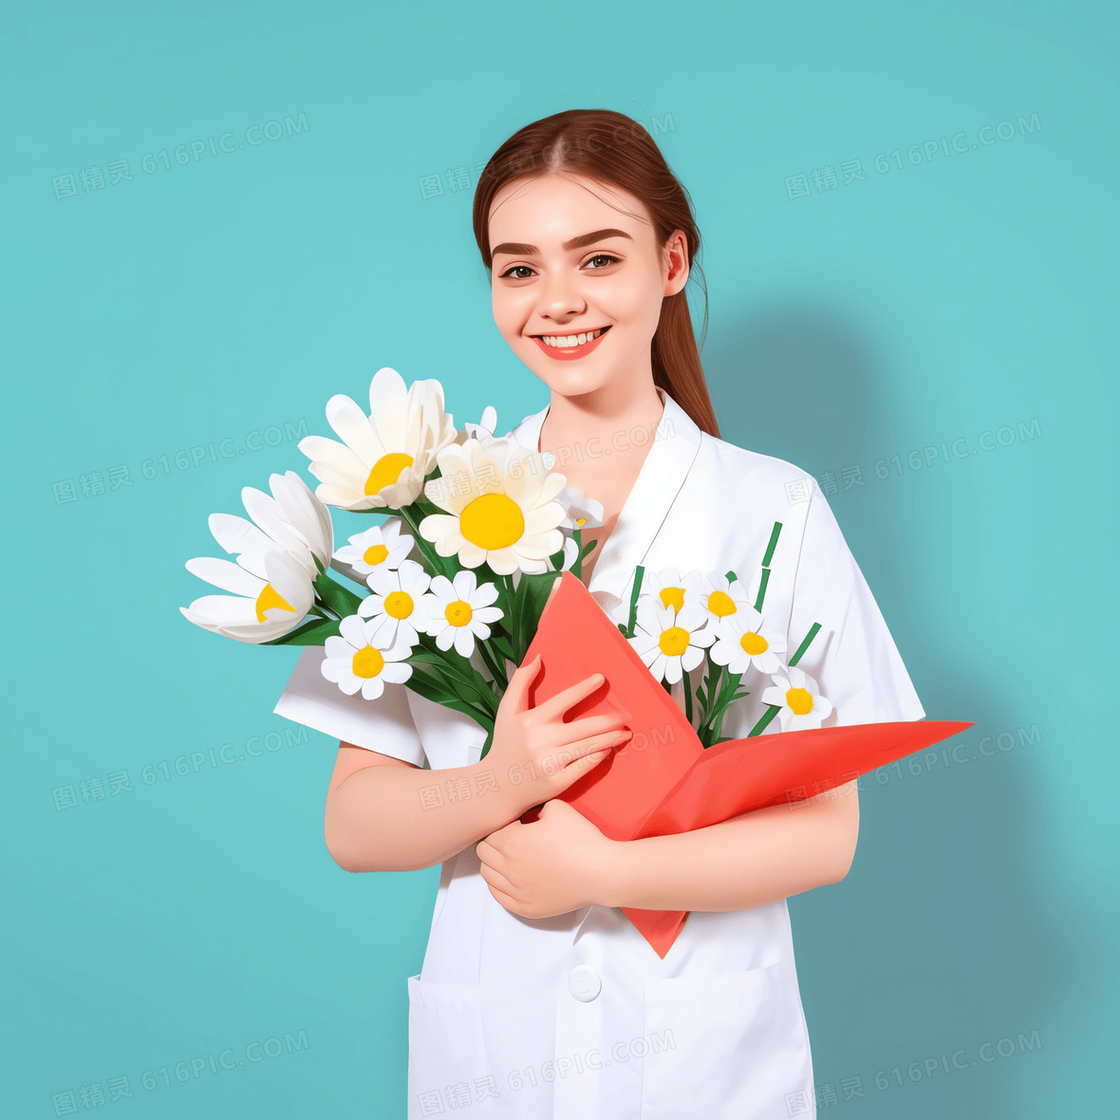 外国护士捧着鲜花开心的微笑